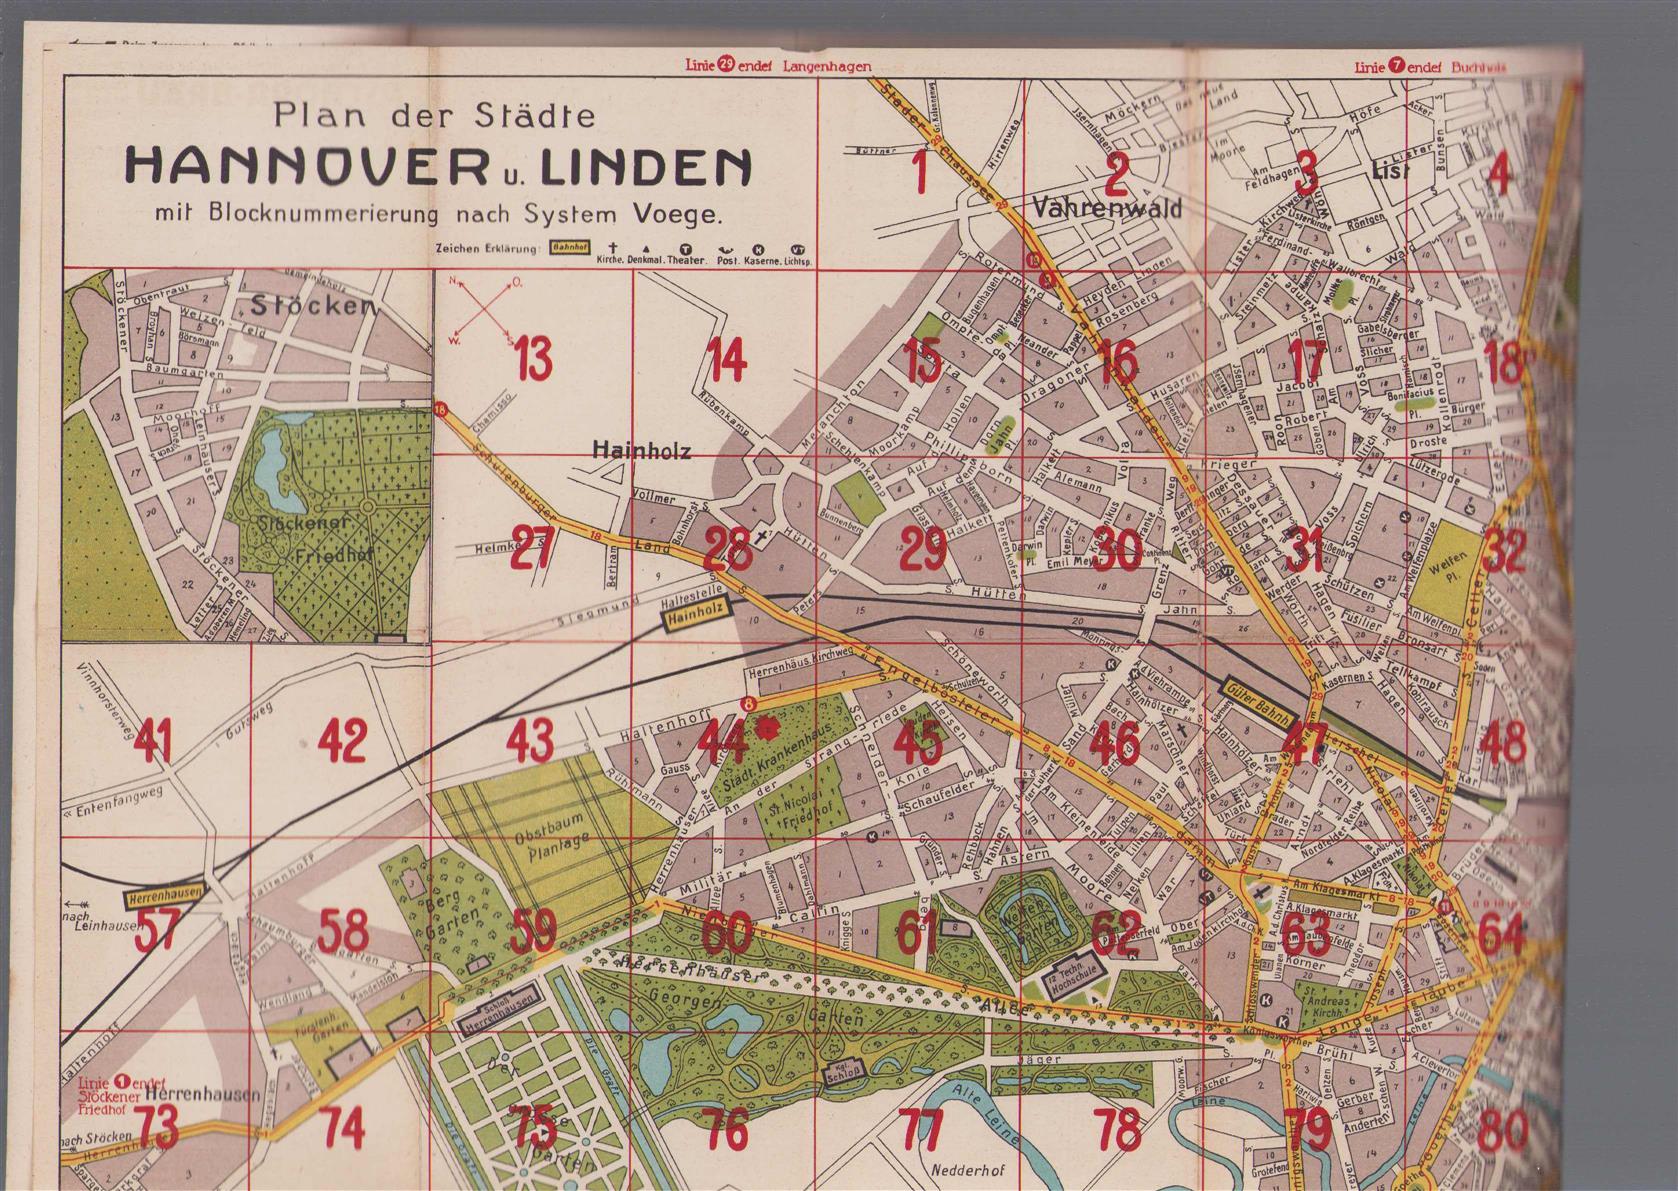 n.n - (PLATTEGROND / KAART - CITY MAP / MAP) Plan der Stadte Hannover u. Linden mit blocknummerierung nach system Voege